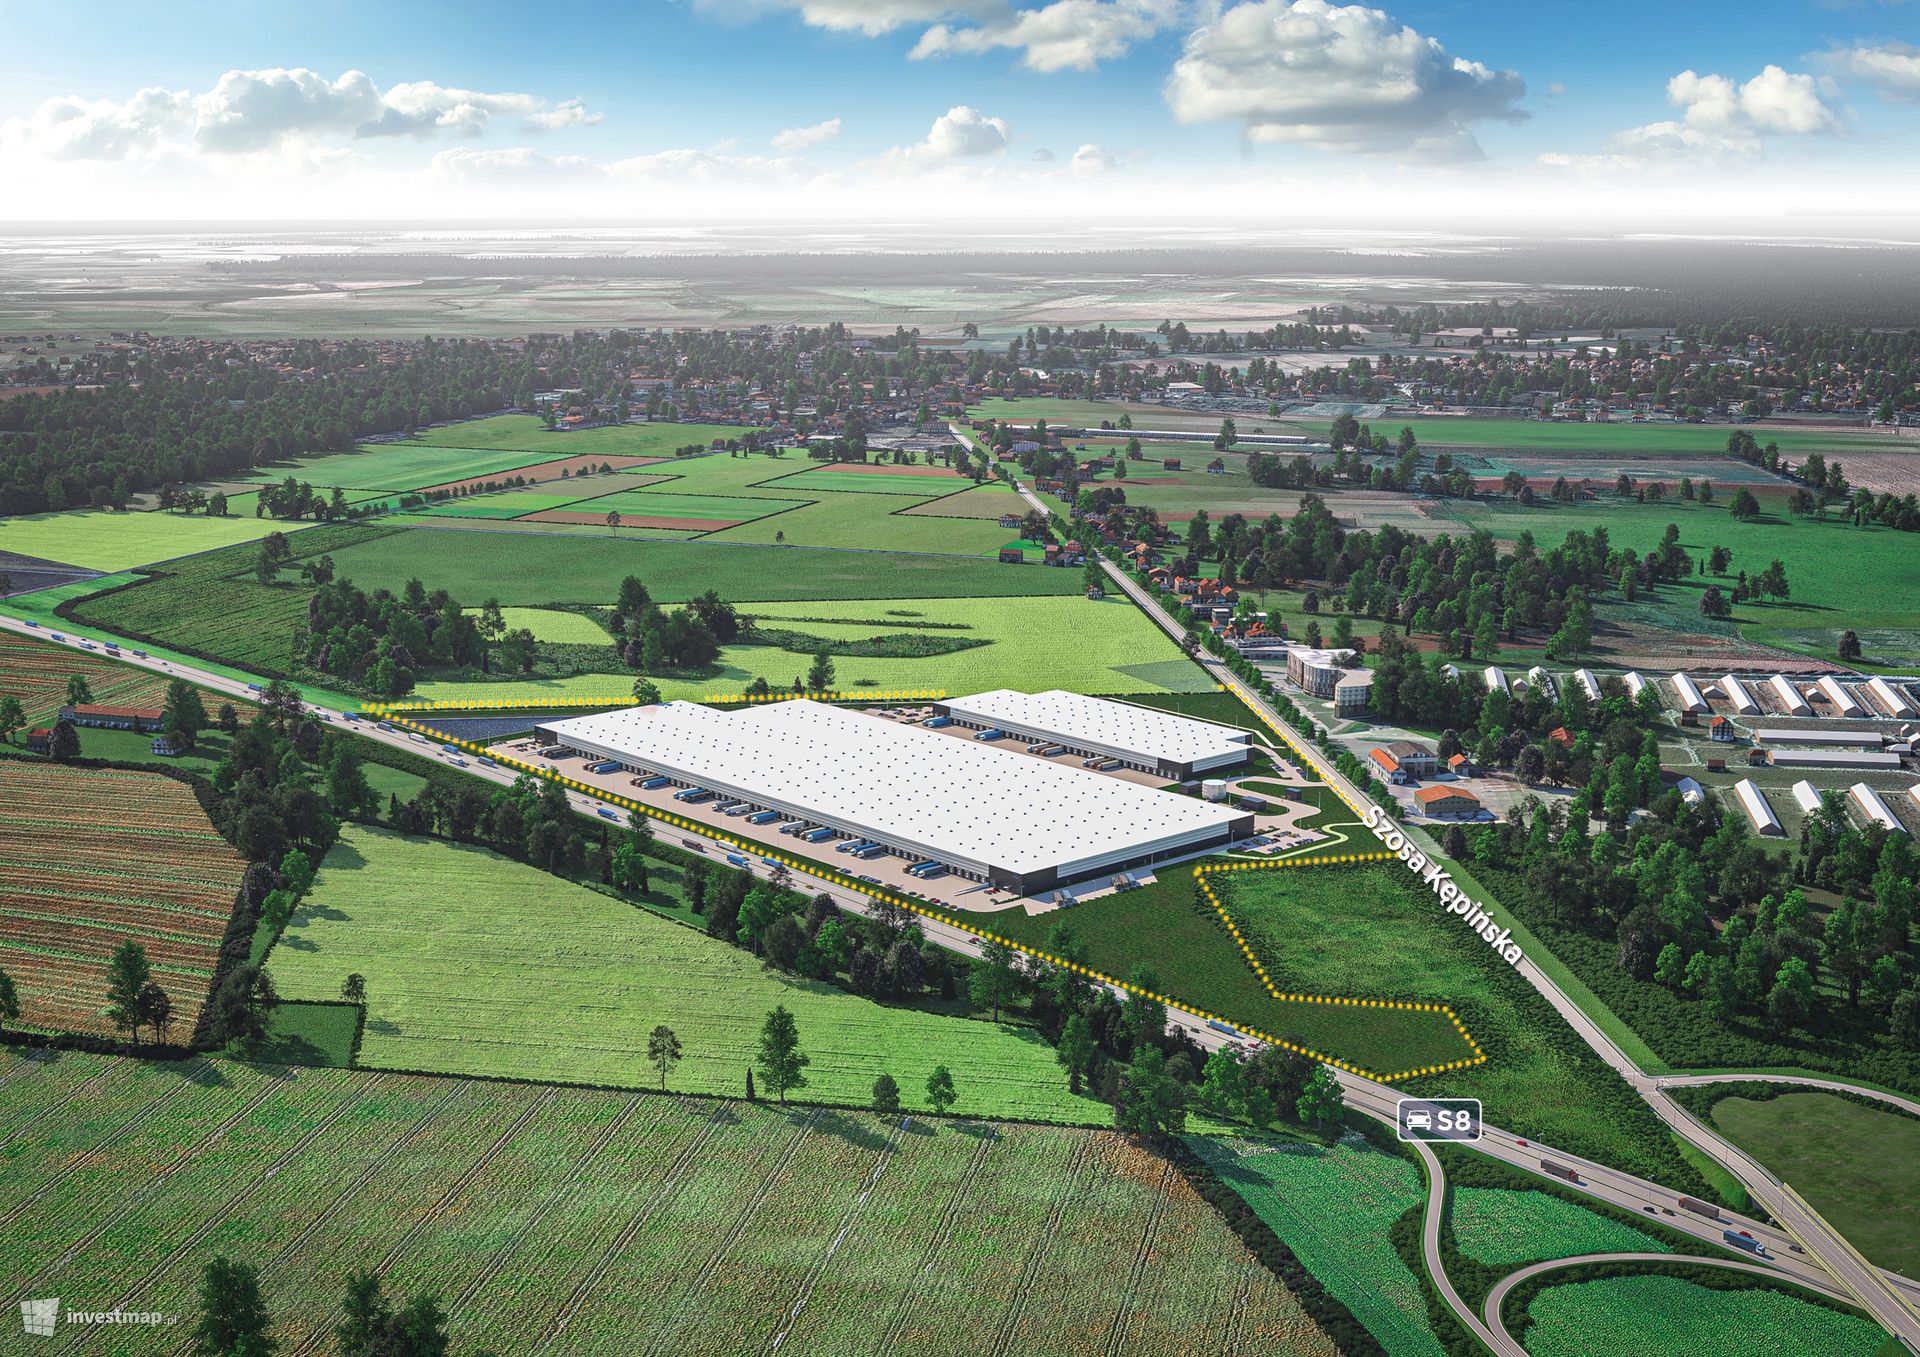 Amerykańska firma Hillwood rozbudowuje swoje wielkie centrum logistyczne w Sycowie na Dolnym Śląsku